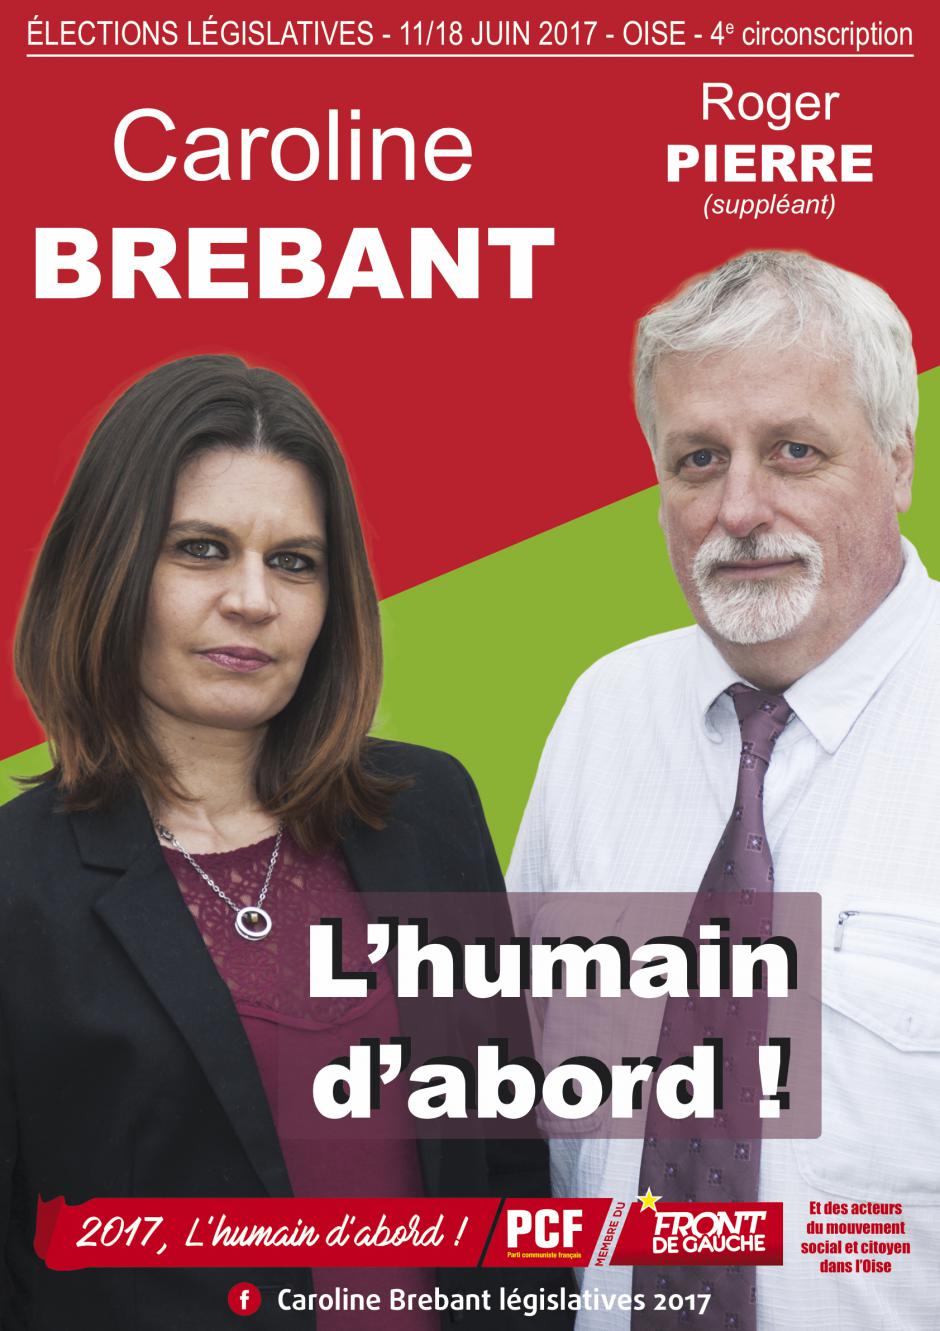 2 juin, Nanteuil-le-Haudouin - Réunion publique avec Caroline Brebant et Roger Pierre